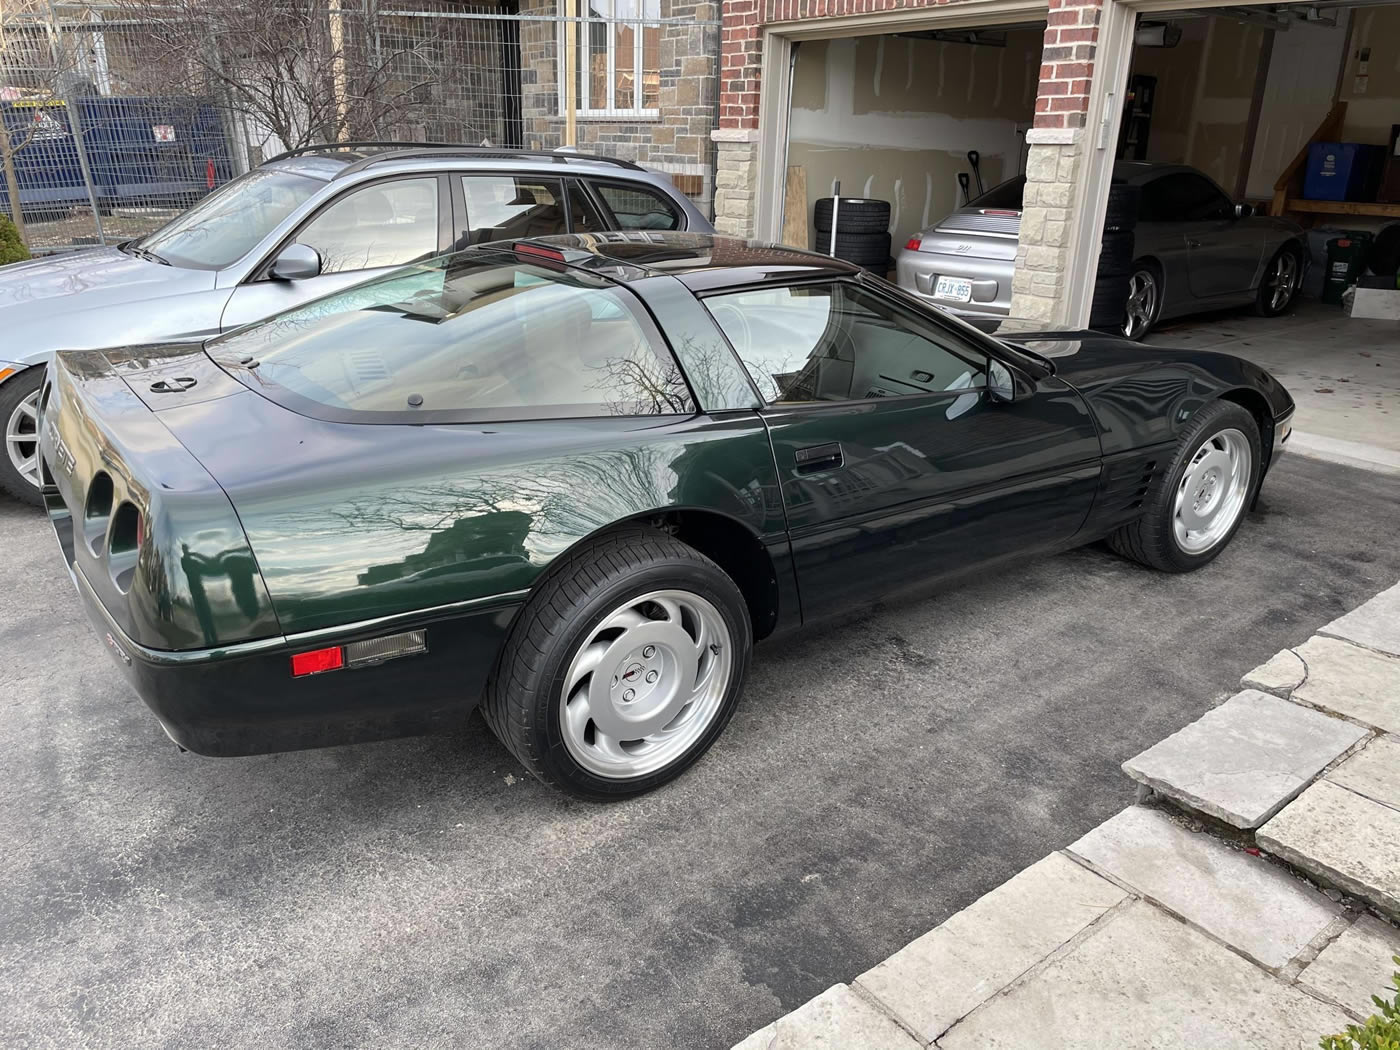 1991 Corvette ZR-1 in Polo Green Metallic